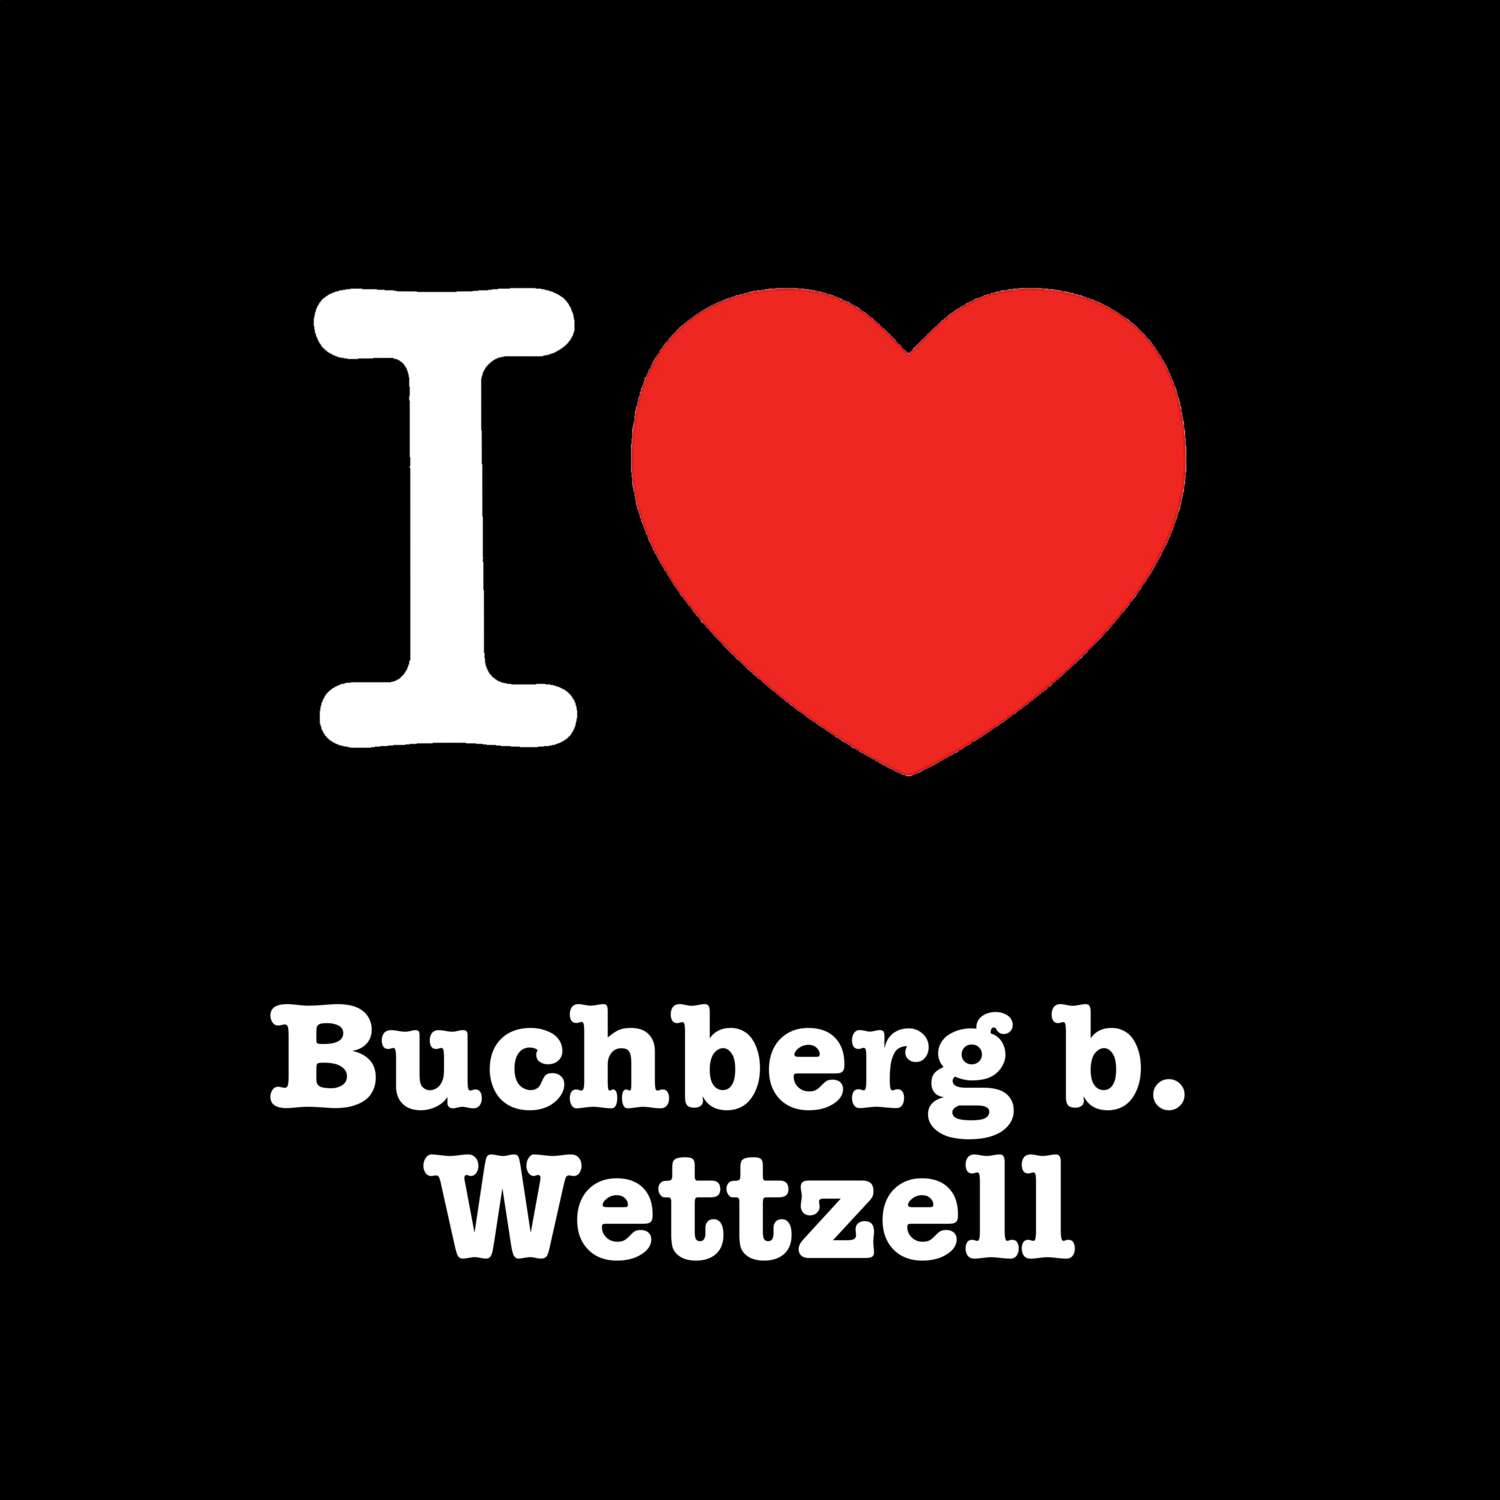 Buchberg b. Wettzell T-Shirt »I love«